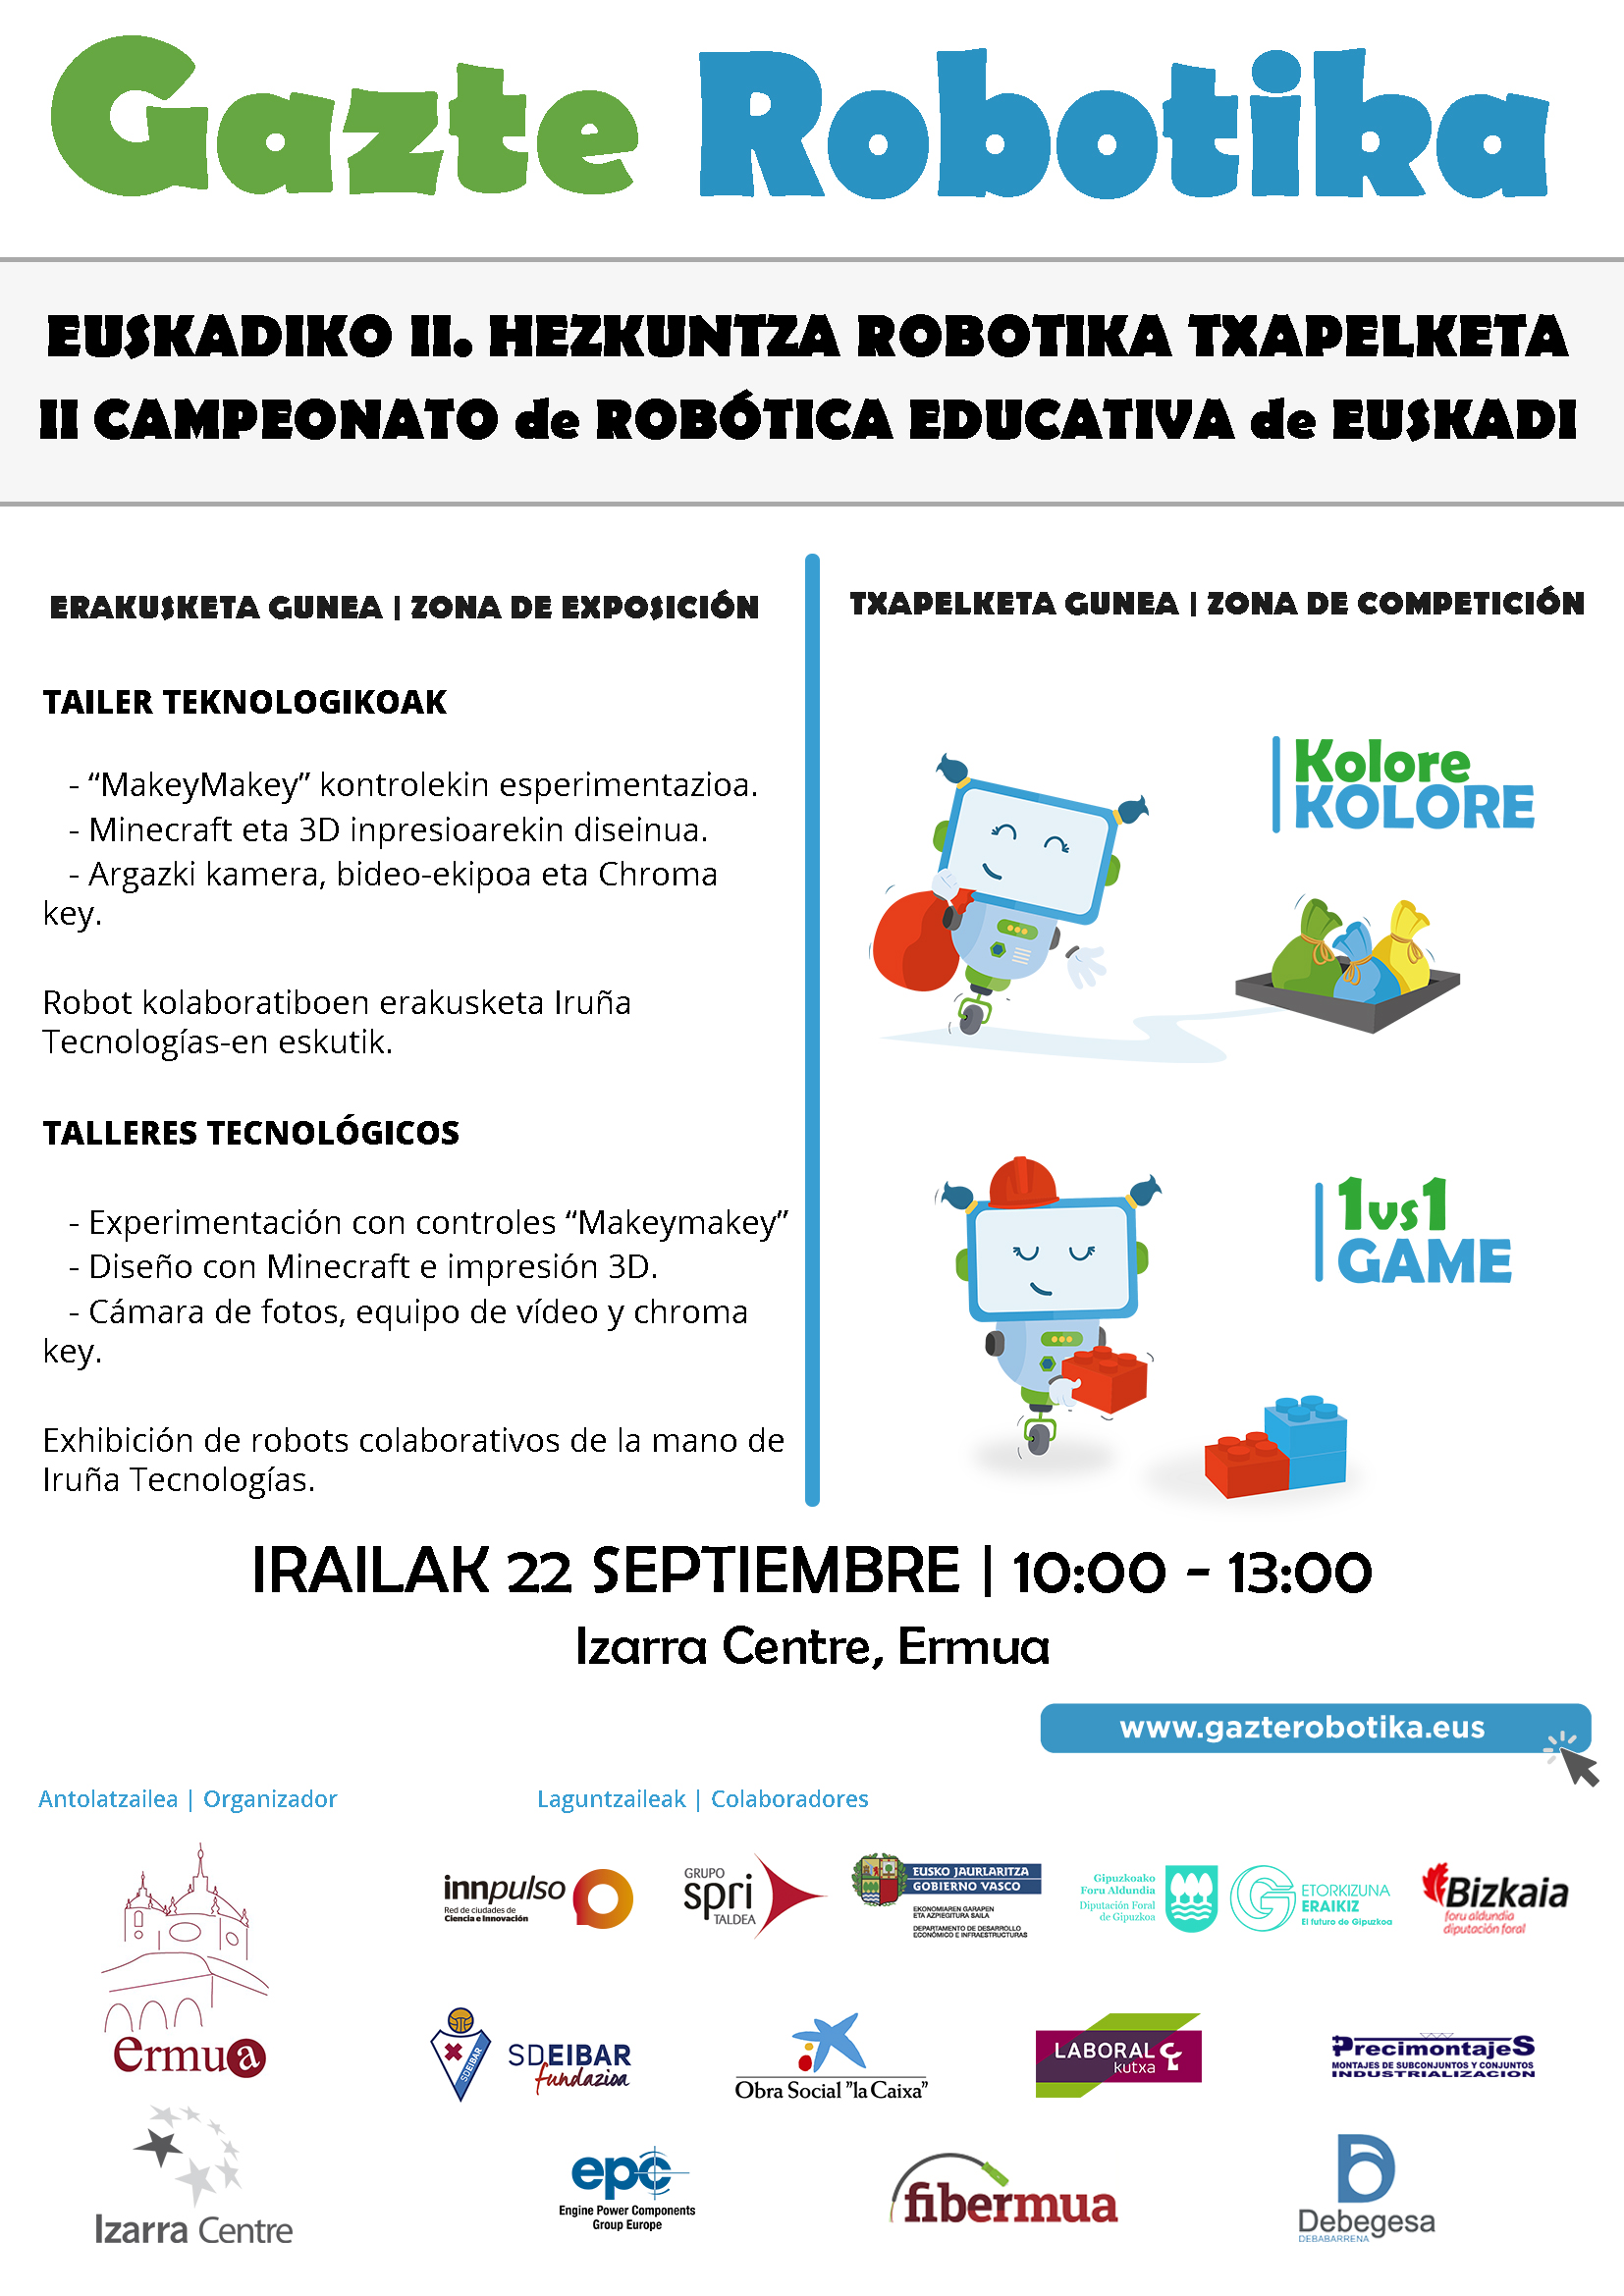 Ermua acogerá este sábado la segunda edición del Campeonato de Robótica Educativa de Euskadi 'Gazte Robotika', tras la exitosa primera edición celebrada en Eibar el pasado año